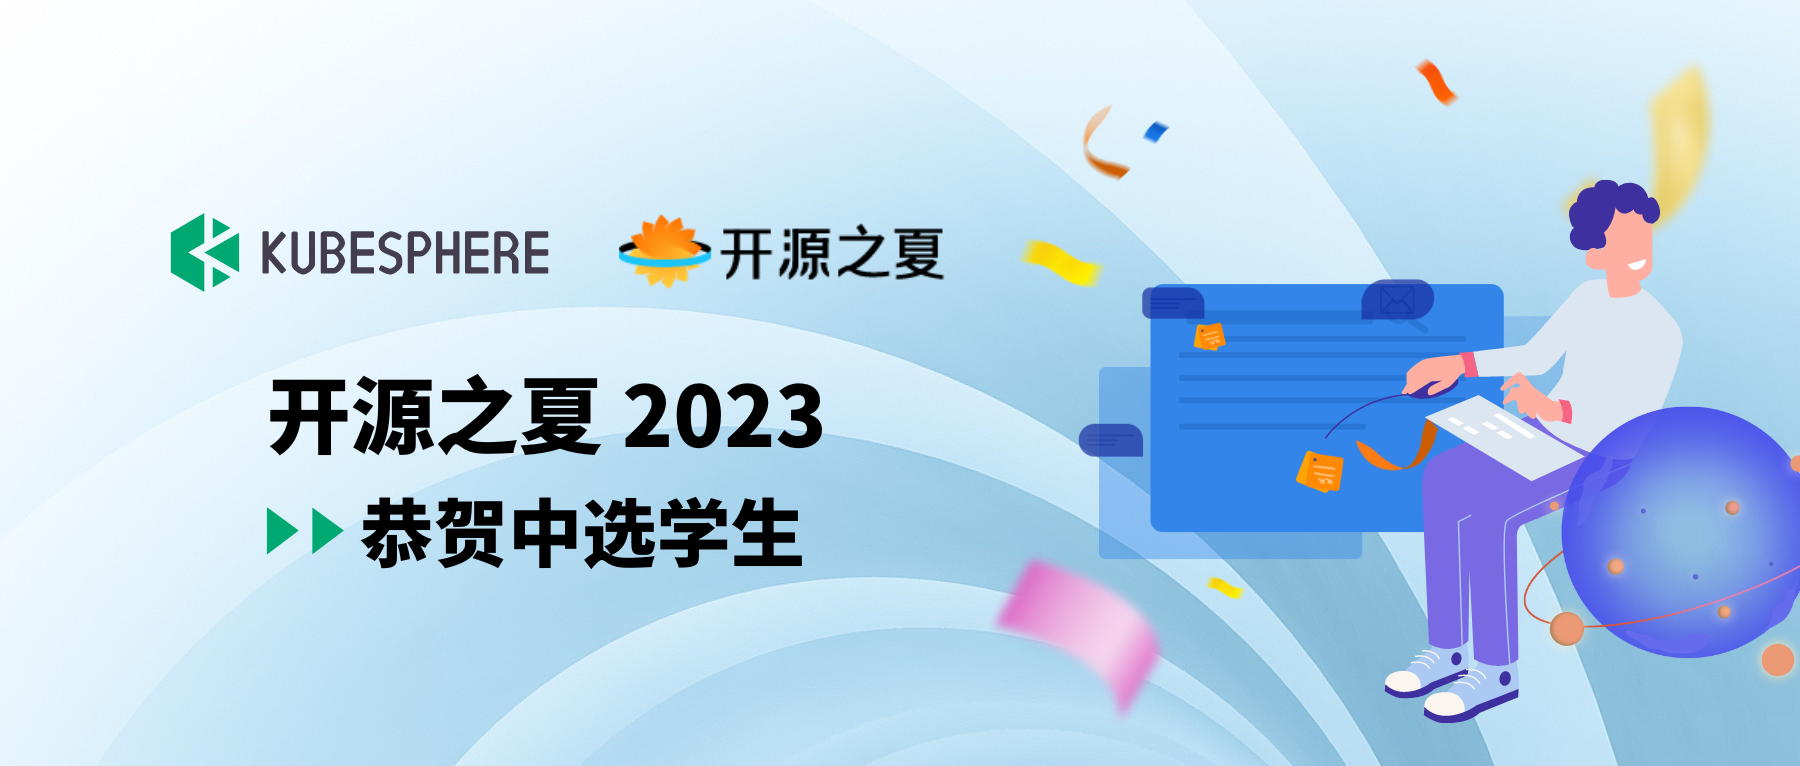 祝贺开源之夏 2023 KubeSphere 社区项目中选学生！